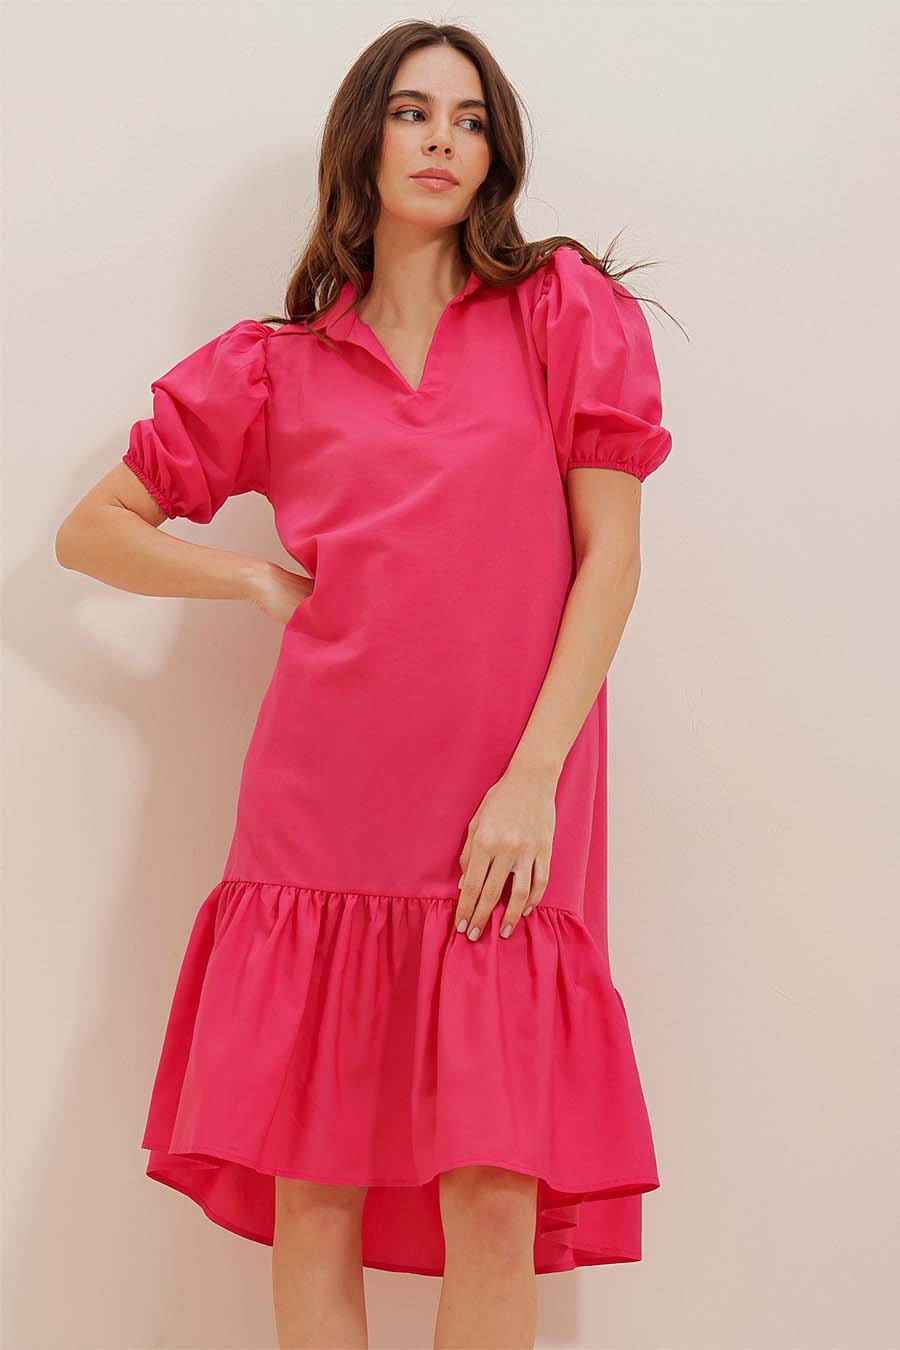 Γυναικείο φόρεμα Kiri, Ροζ 2